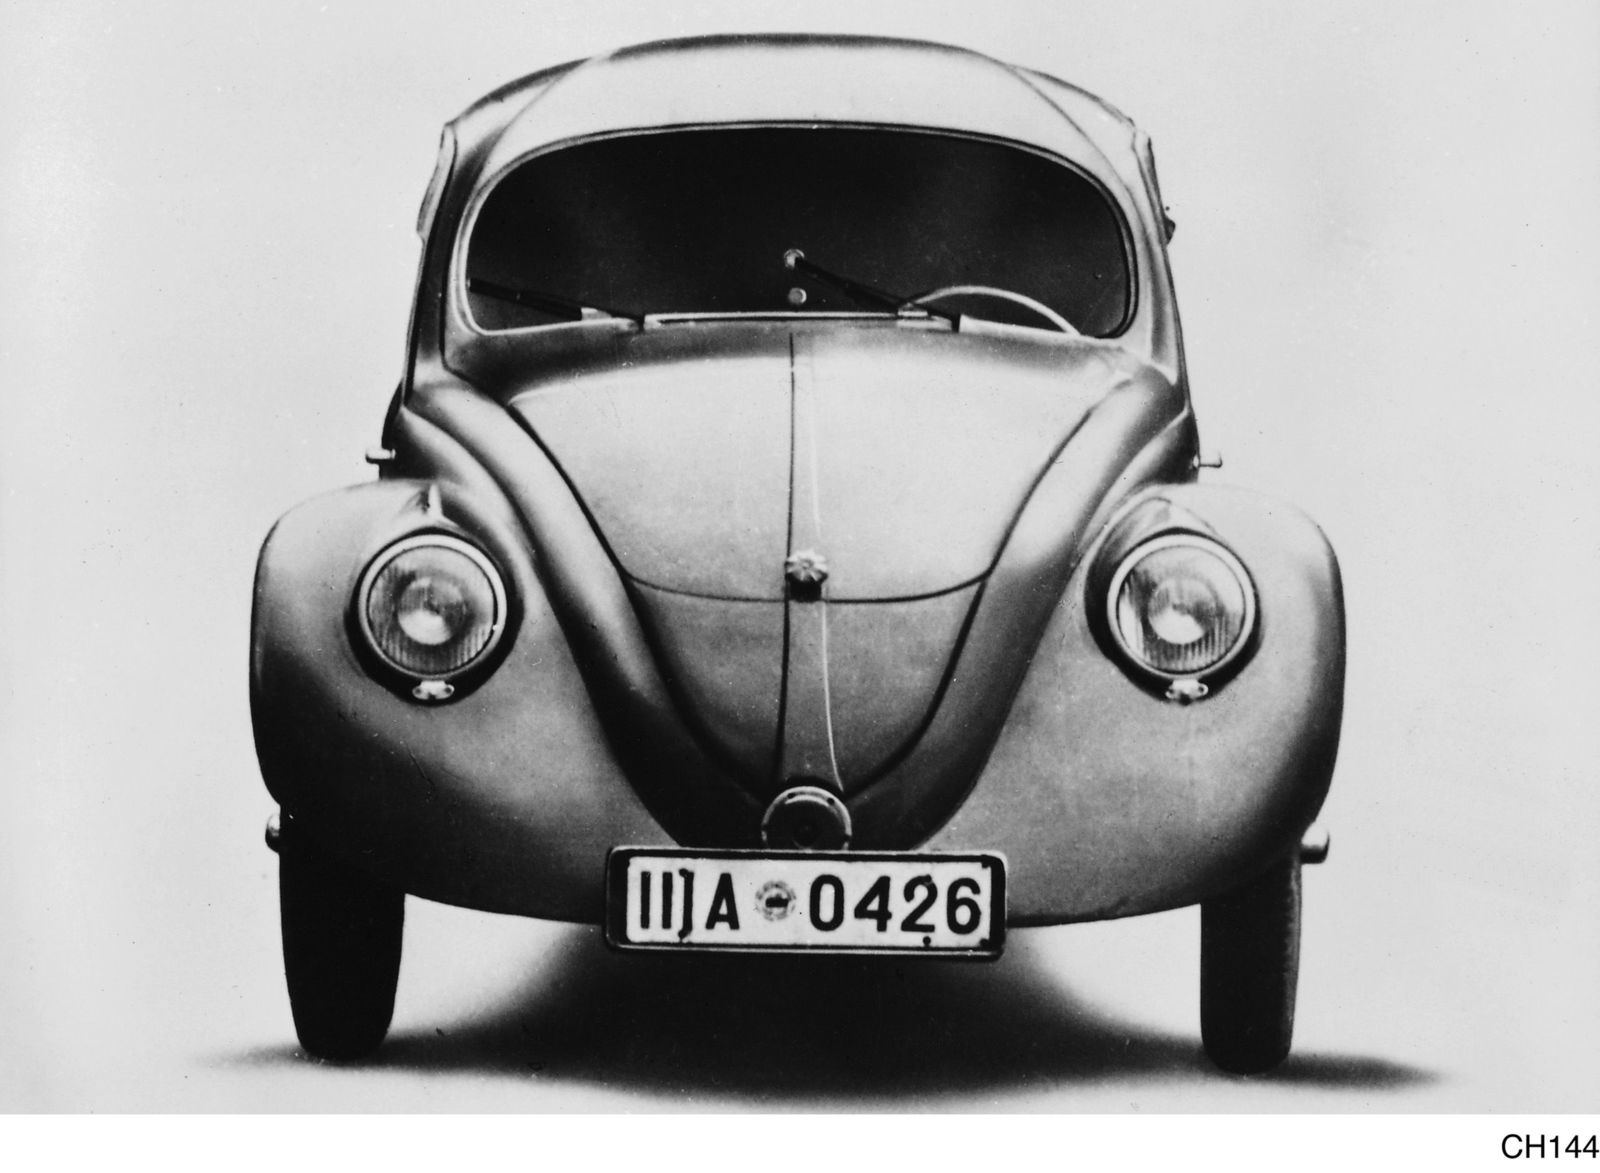 VW 30 Er wurde im Jahr 1937 in 30 Examplaren gefertigt und mute ueber 1 Million Festkilometer absolvieren